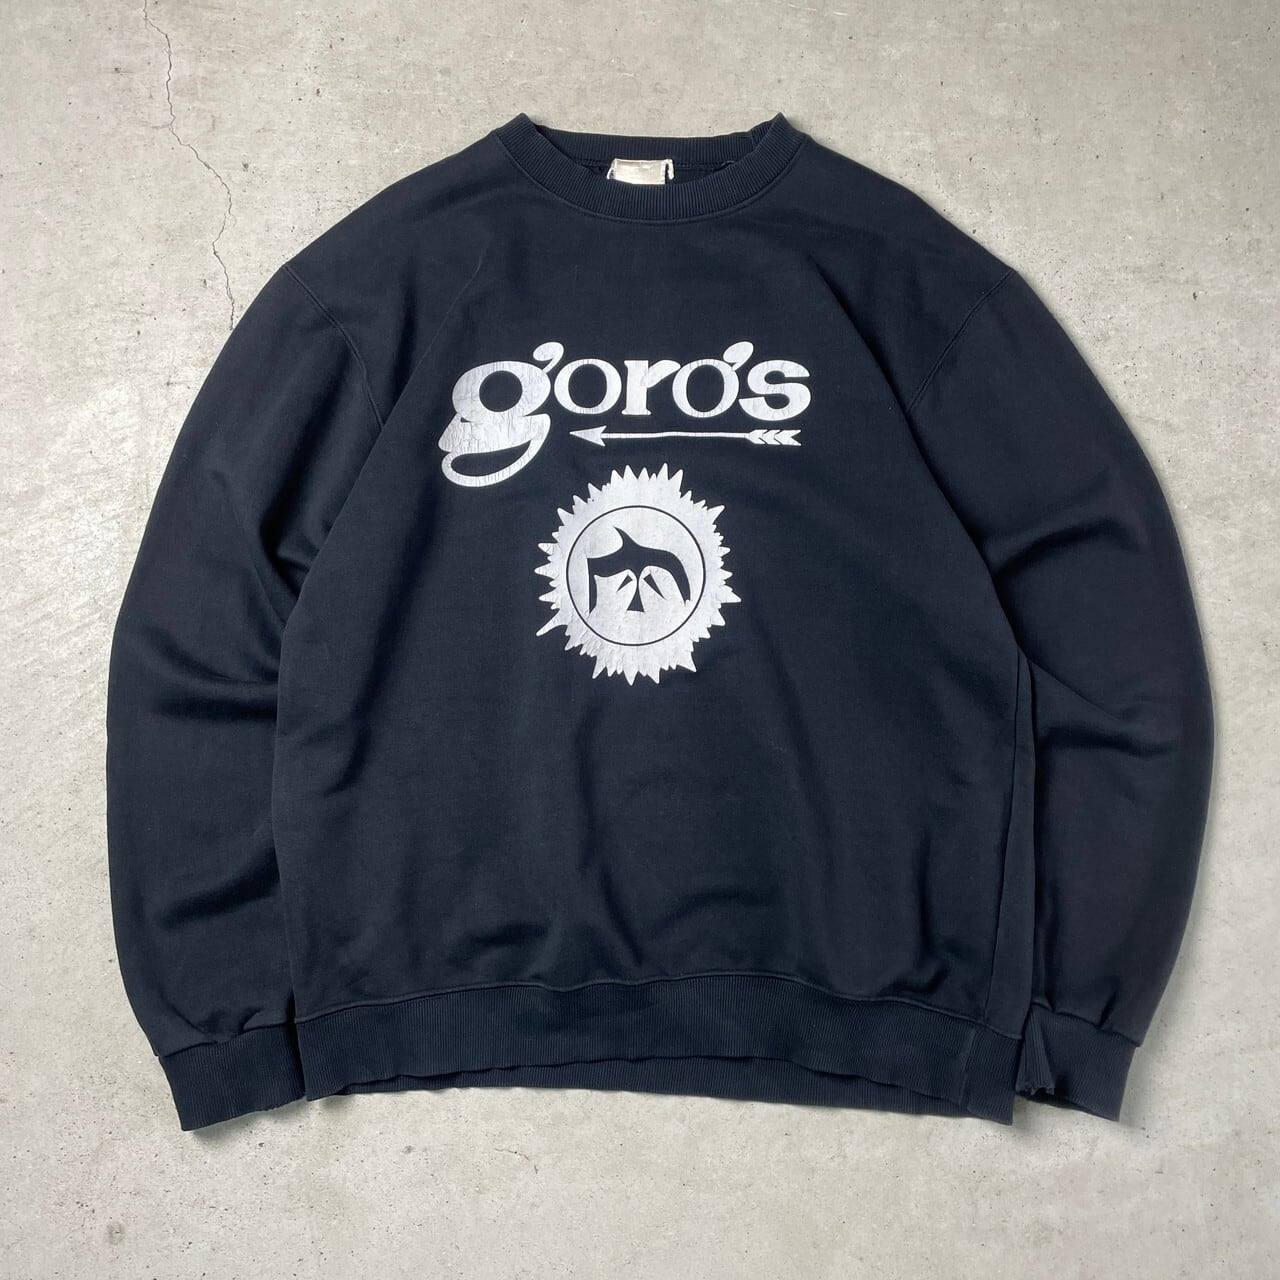 goro’s(ゴローズ) Tシャツ 90’s 黒